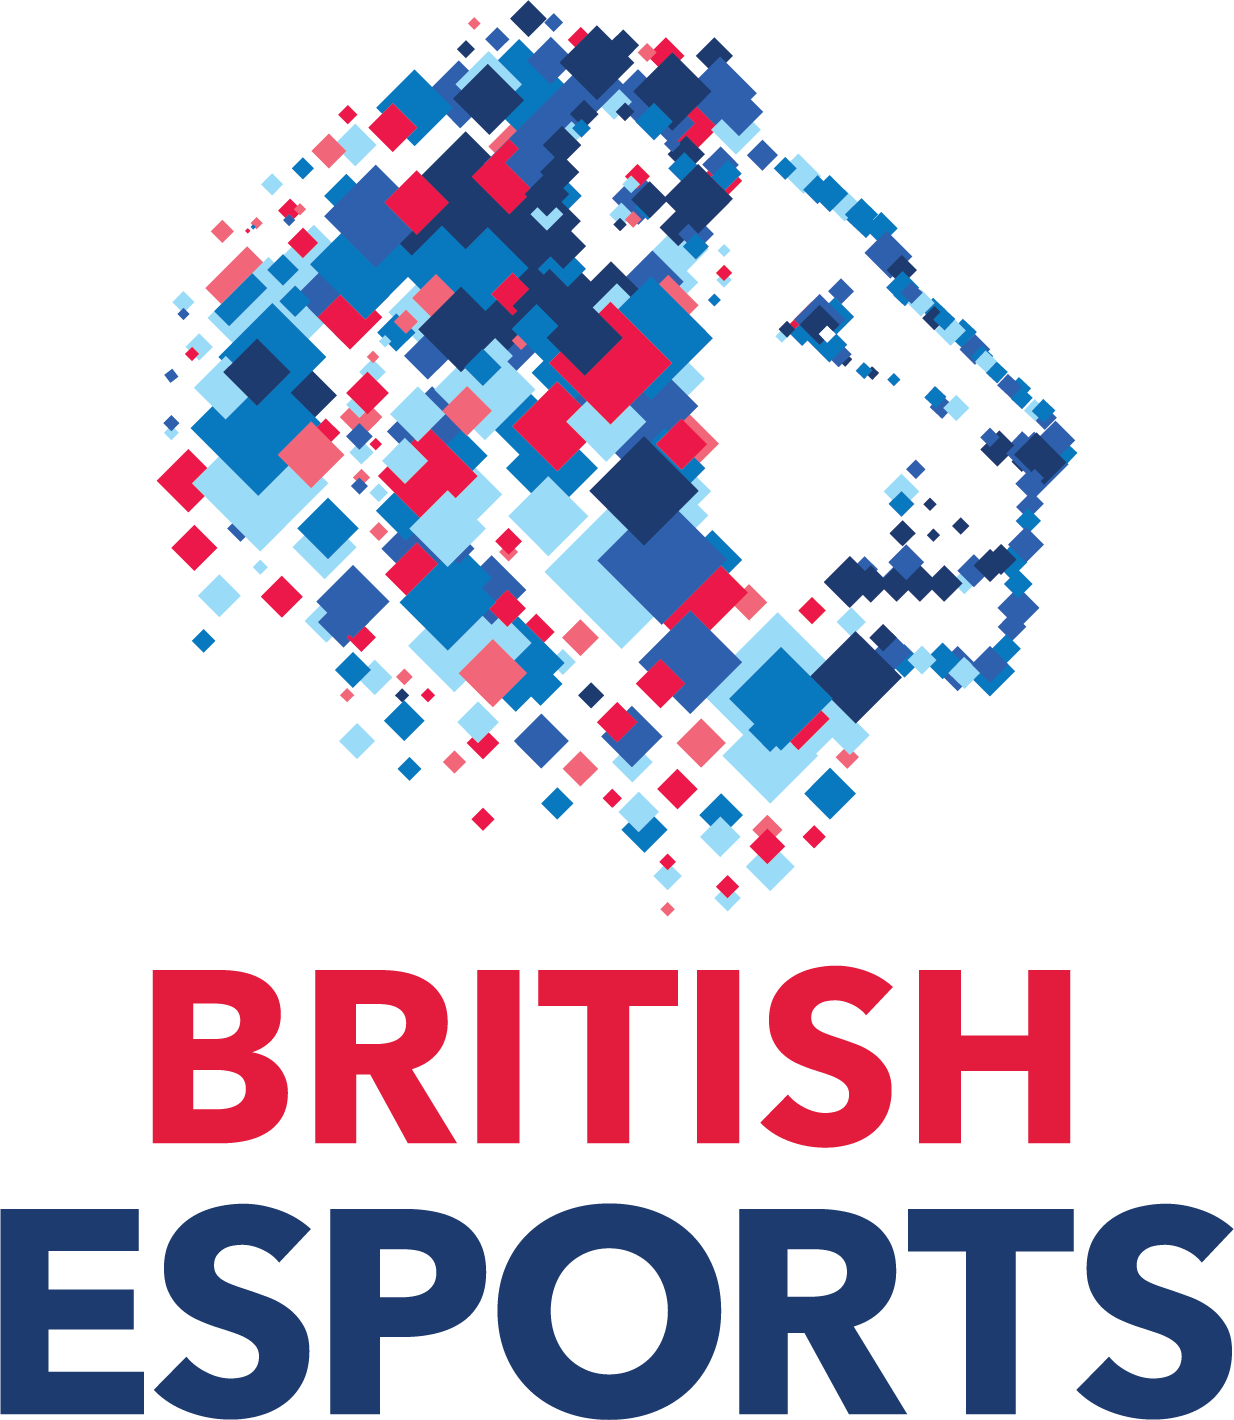 British-esports-logo